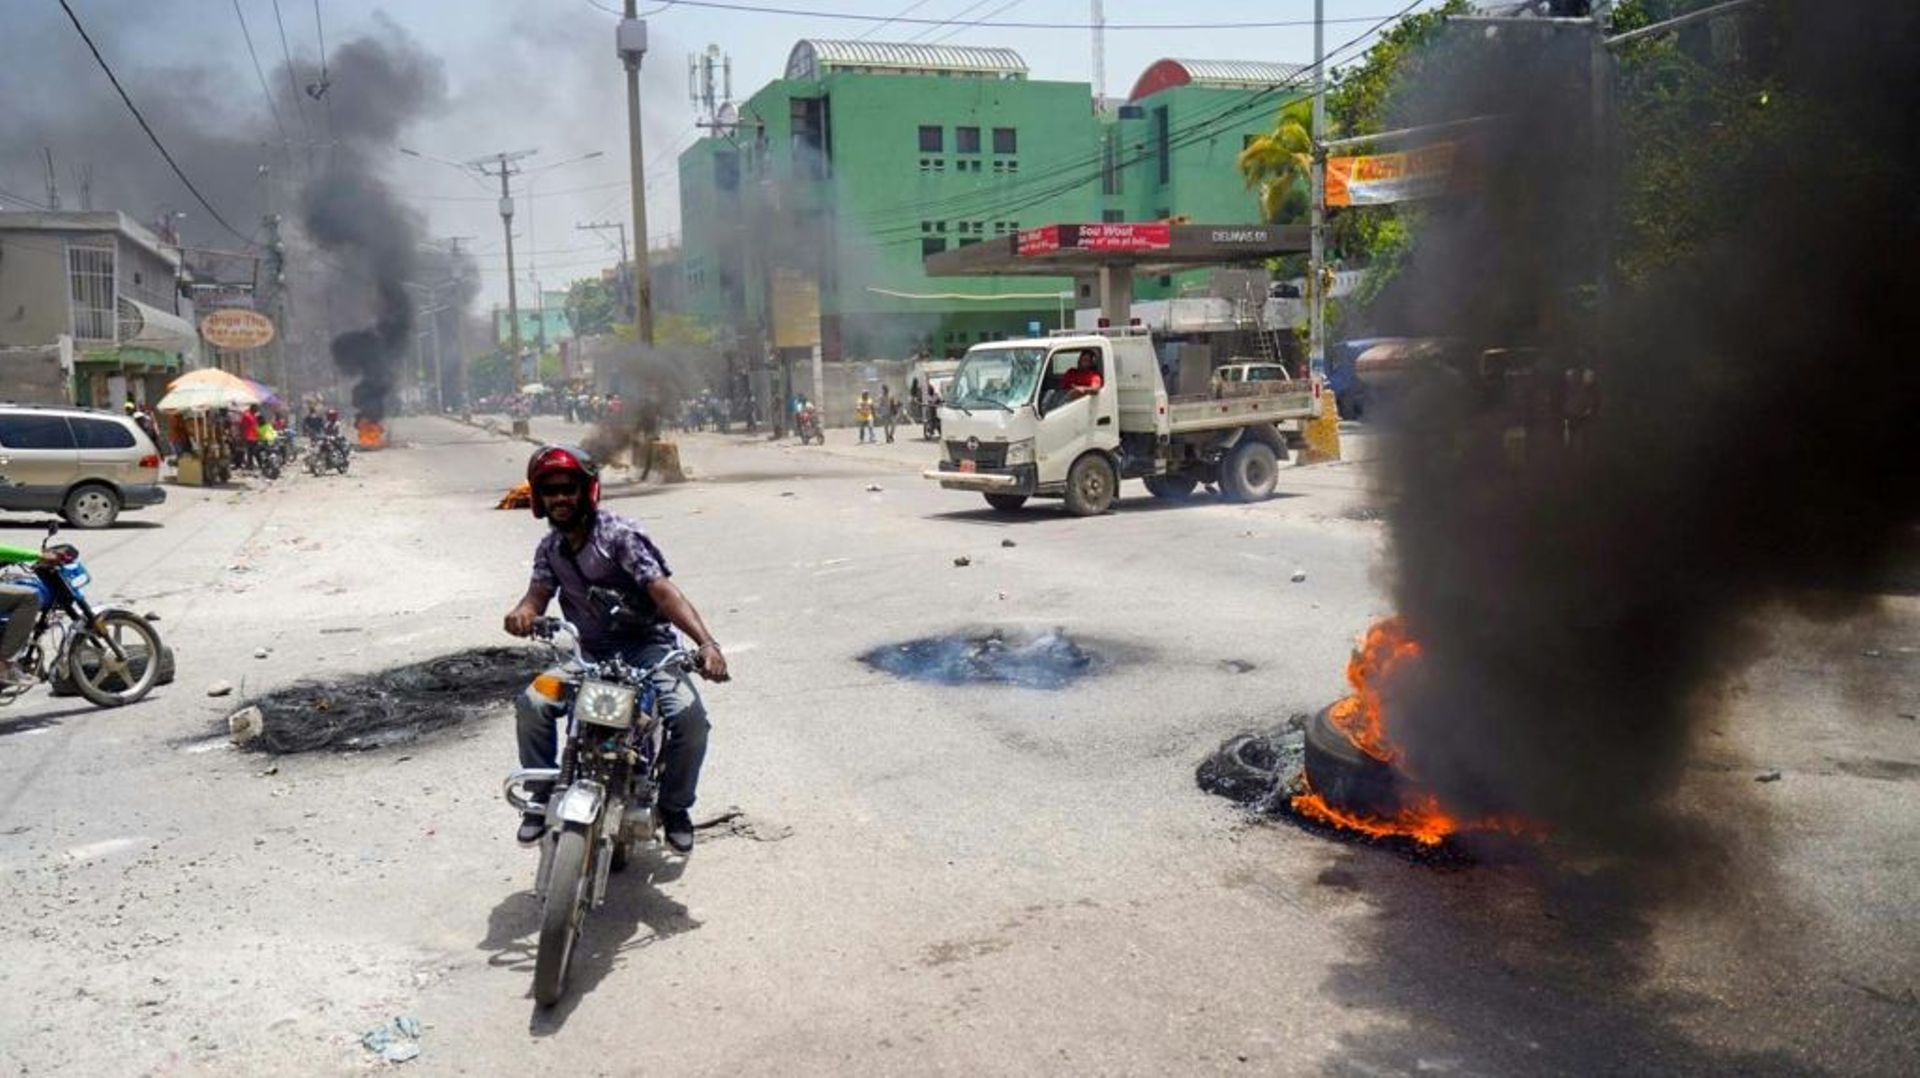 Un homme sur une moto lors d'une manifestation contre la hausse des prix à Port-au-Prince, en Haïti, le 13 juillet 2022